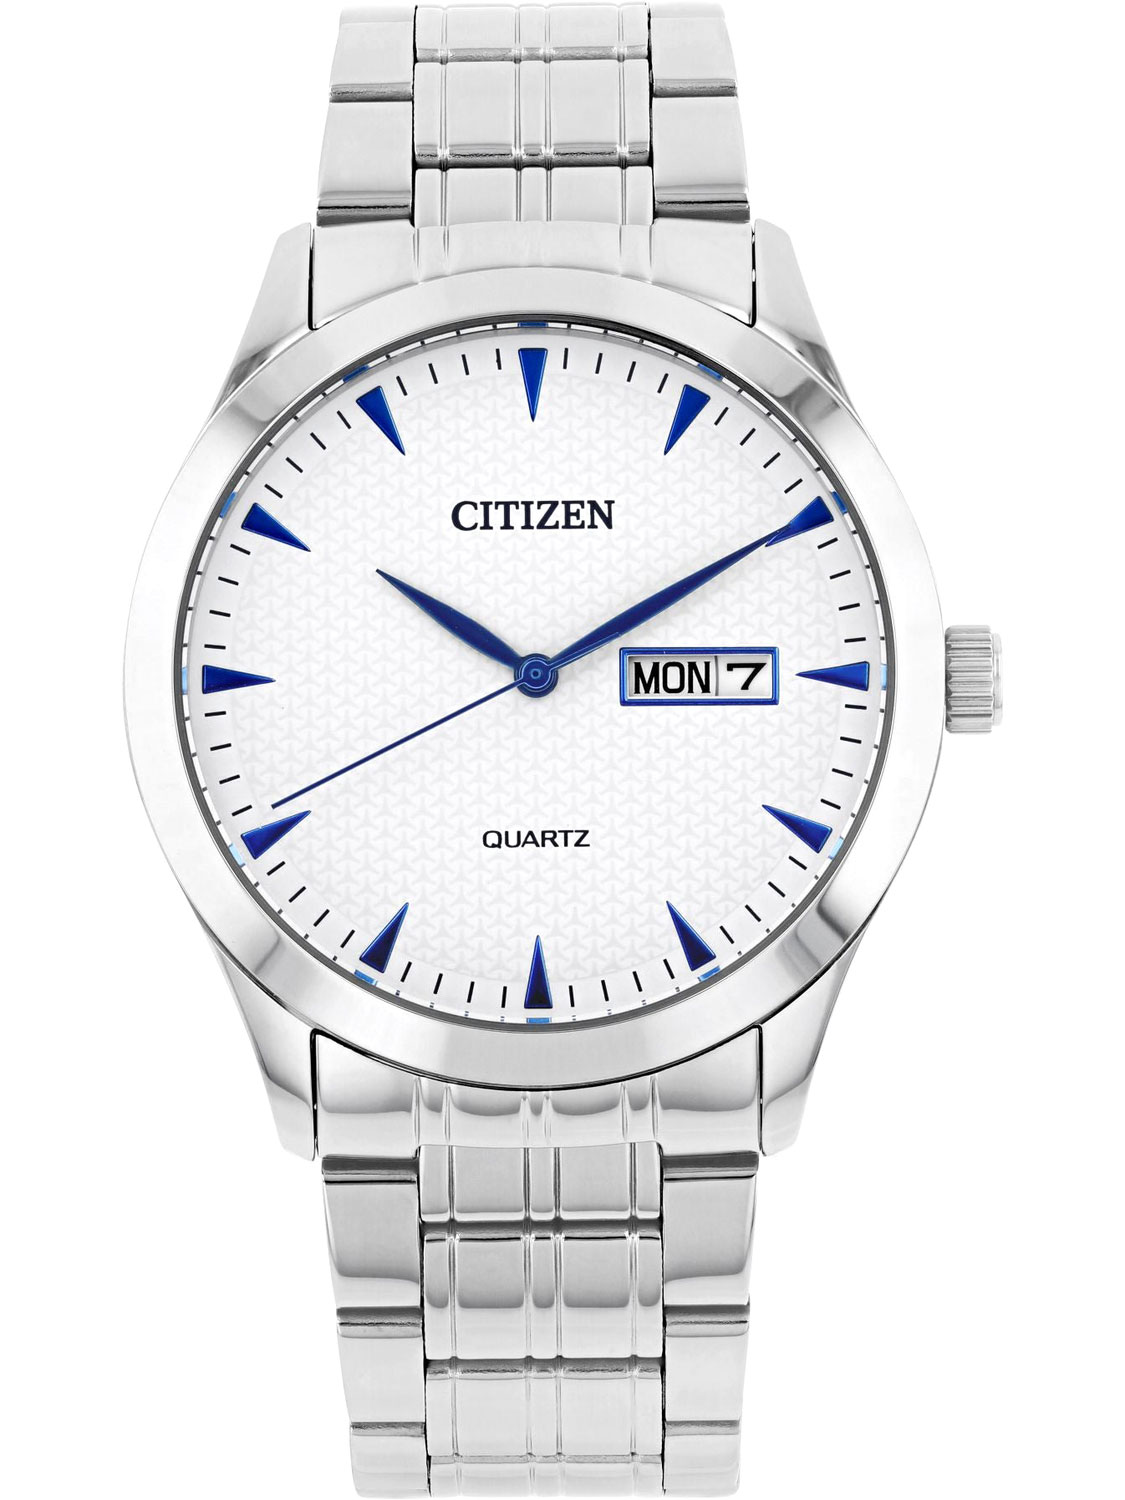    Citizen DZ5010-54A